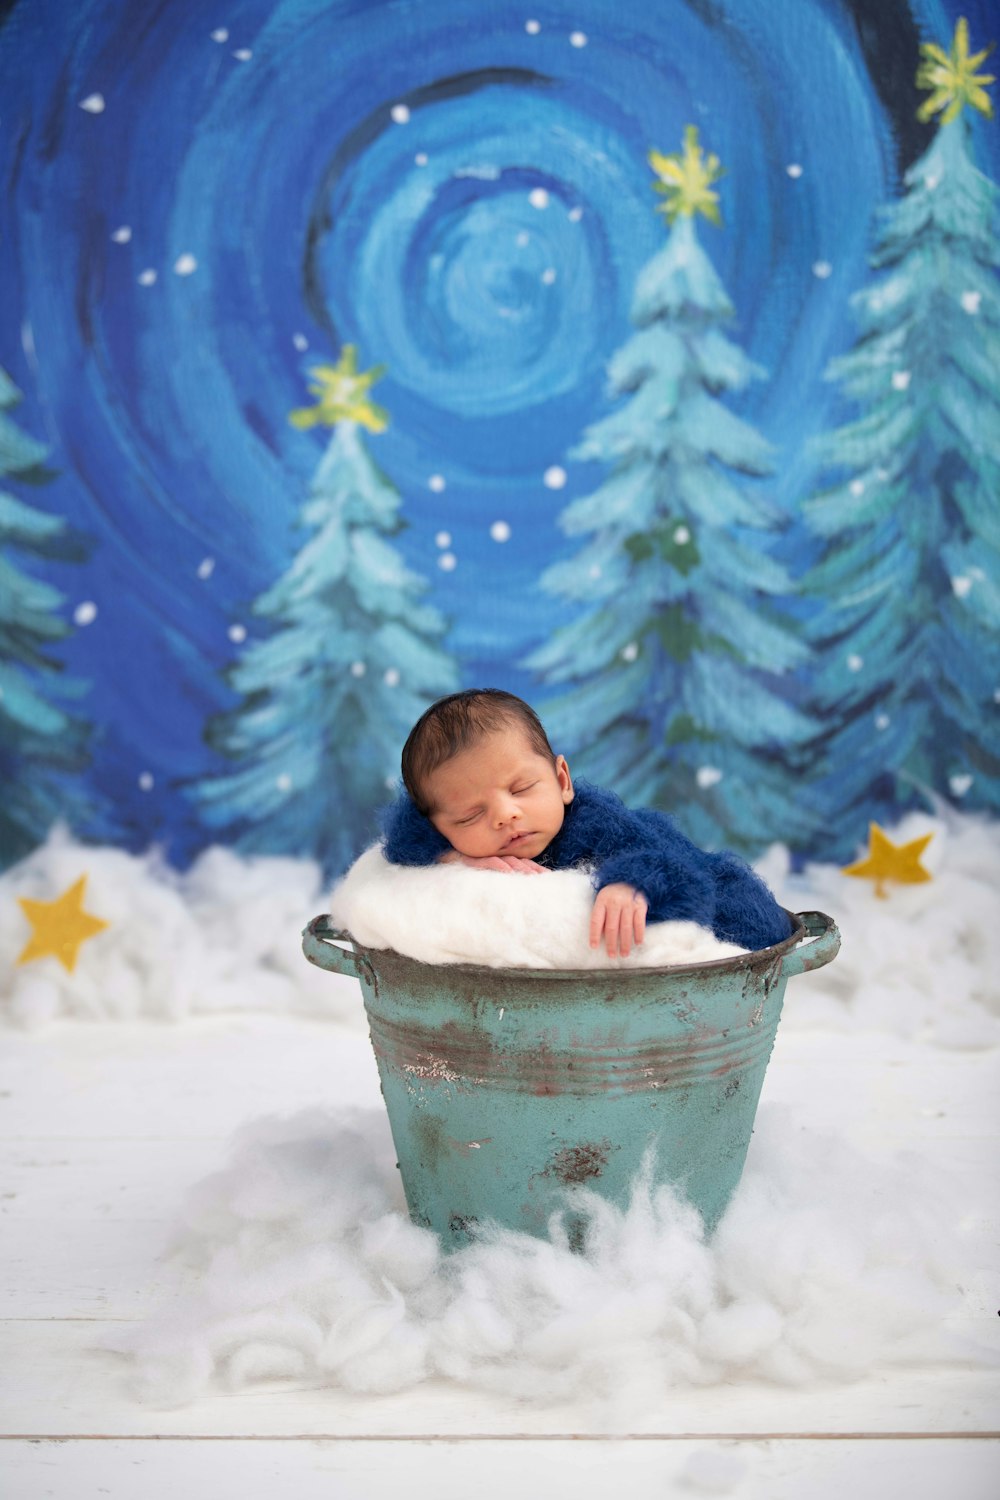 Baby im weißen Eimer auf schneebedecktem Boden